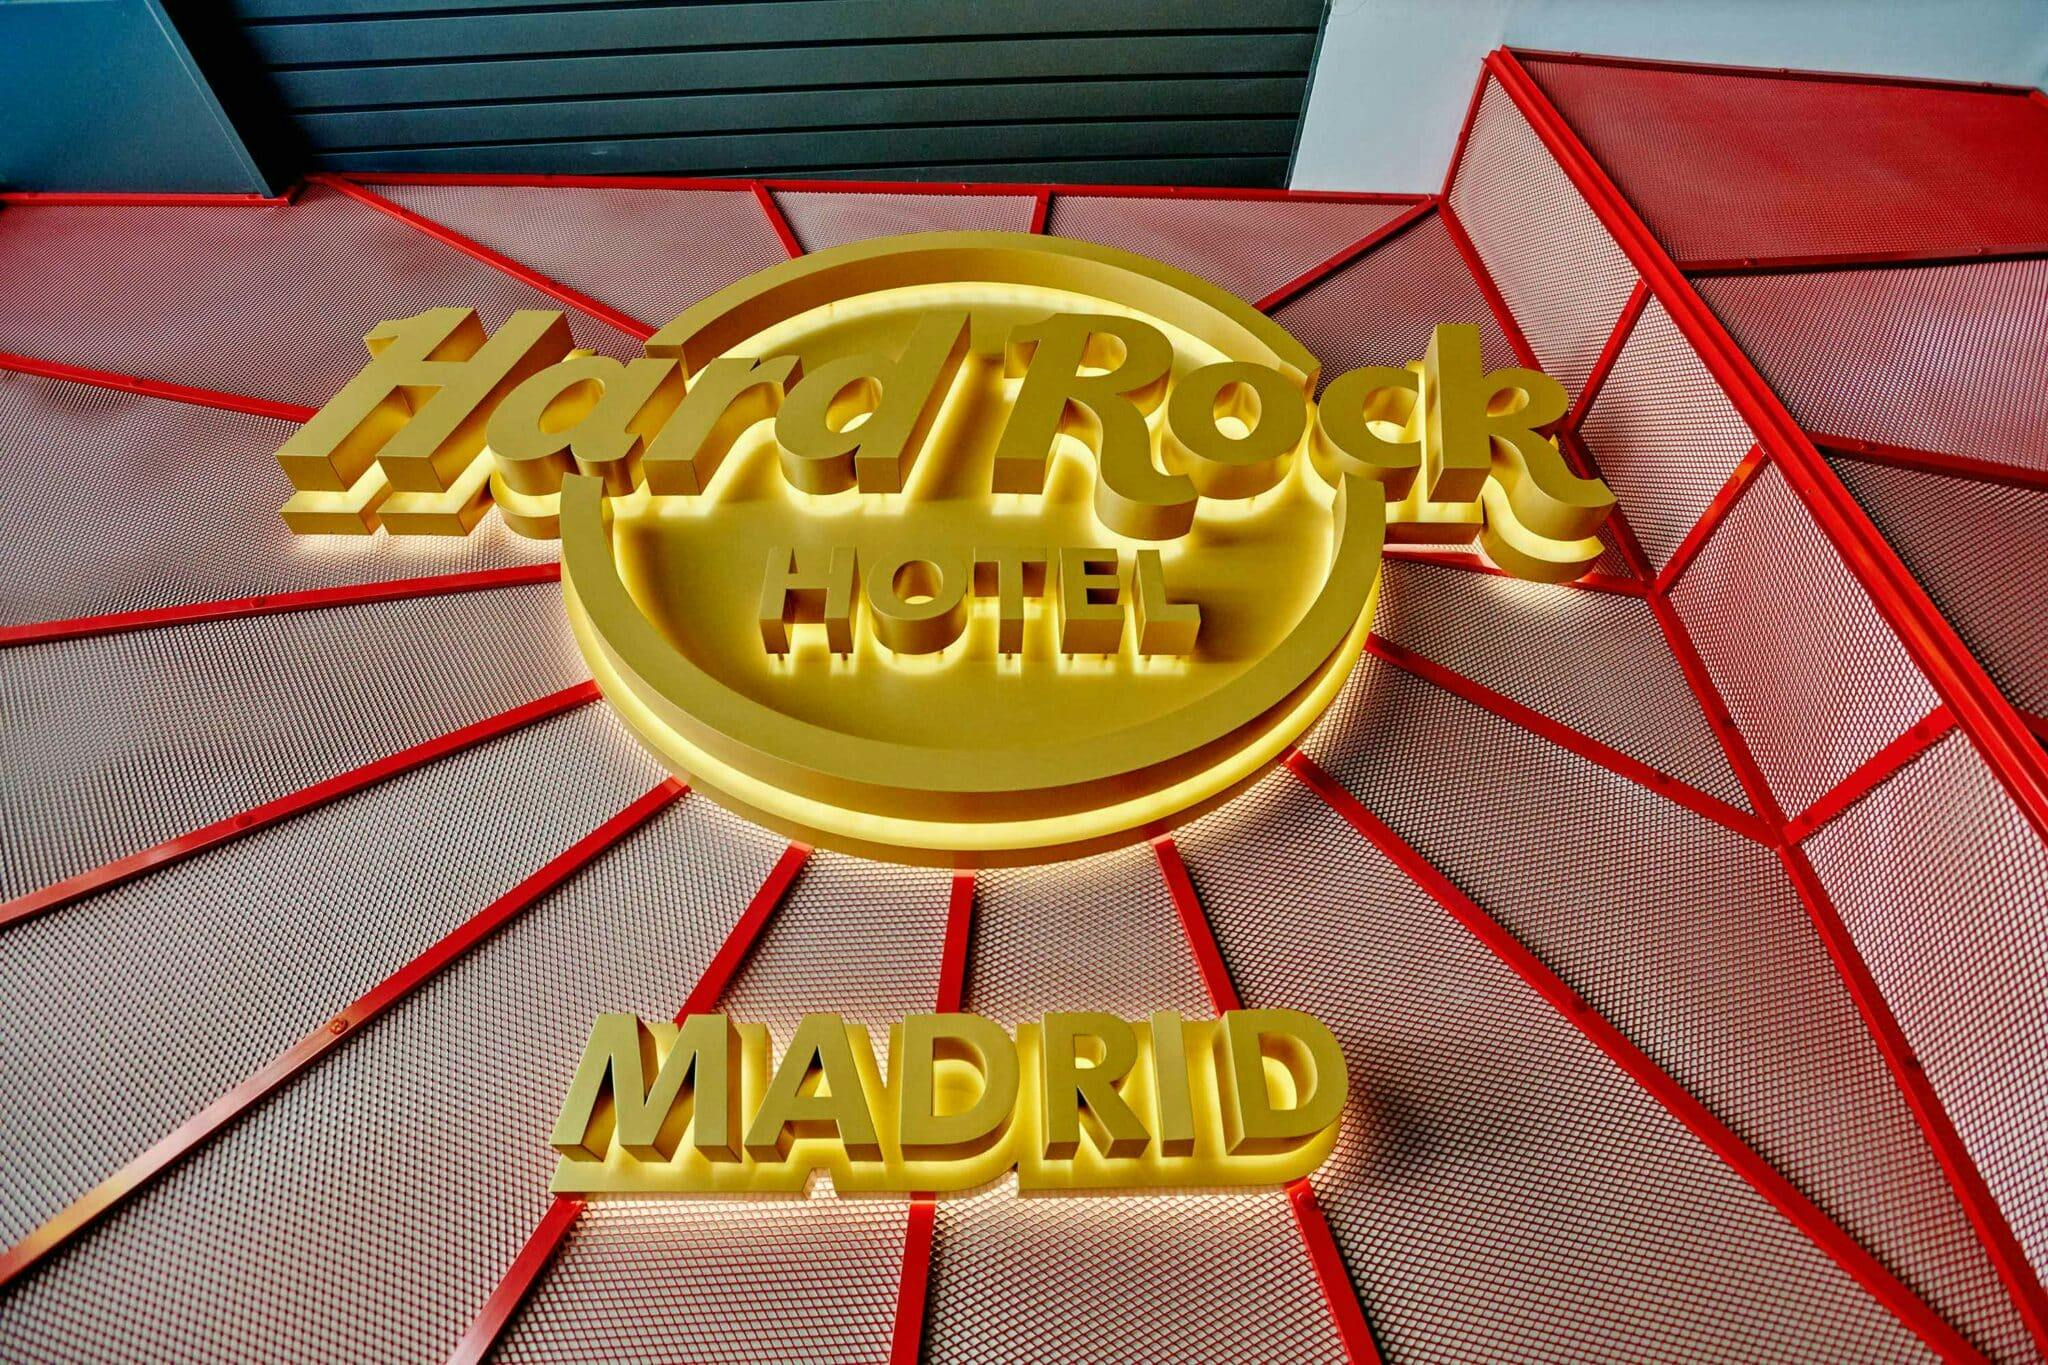 Imagen número 54 de la sección actual de Hard Rock Hotel Madrid